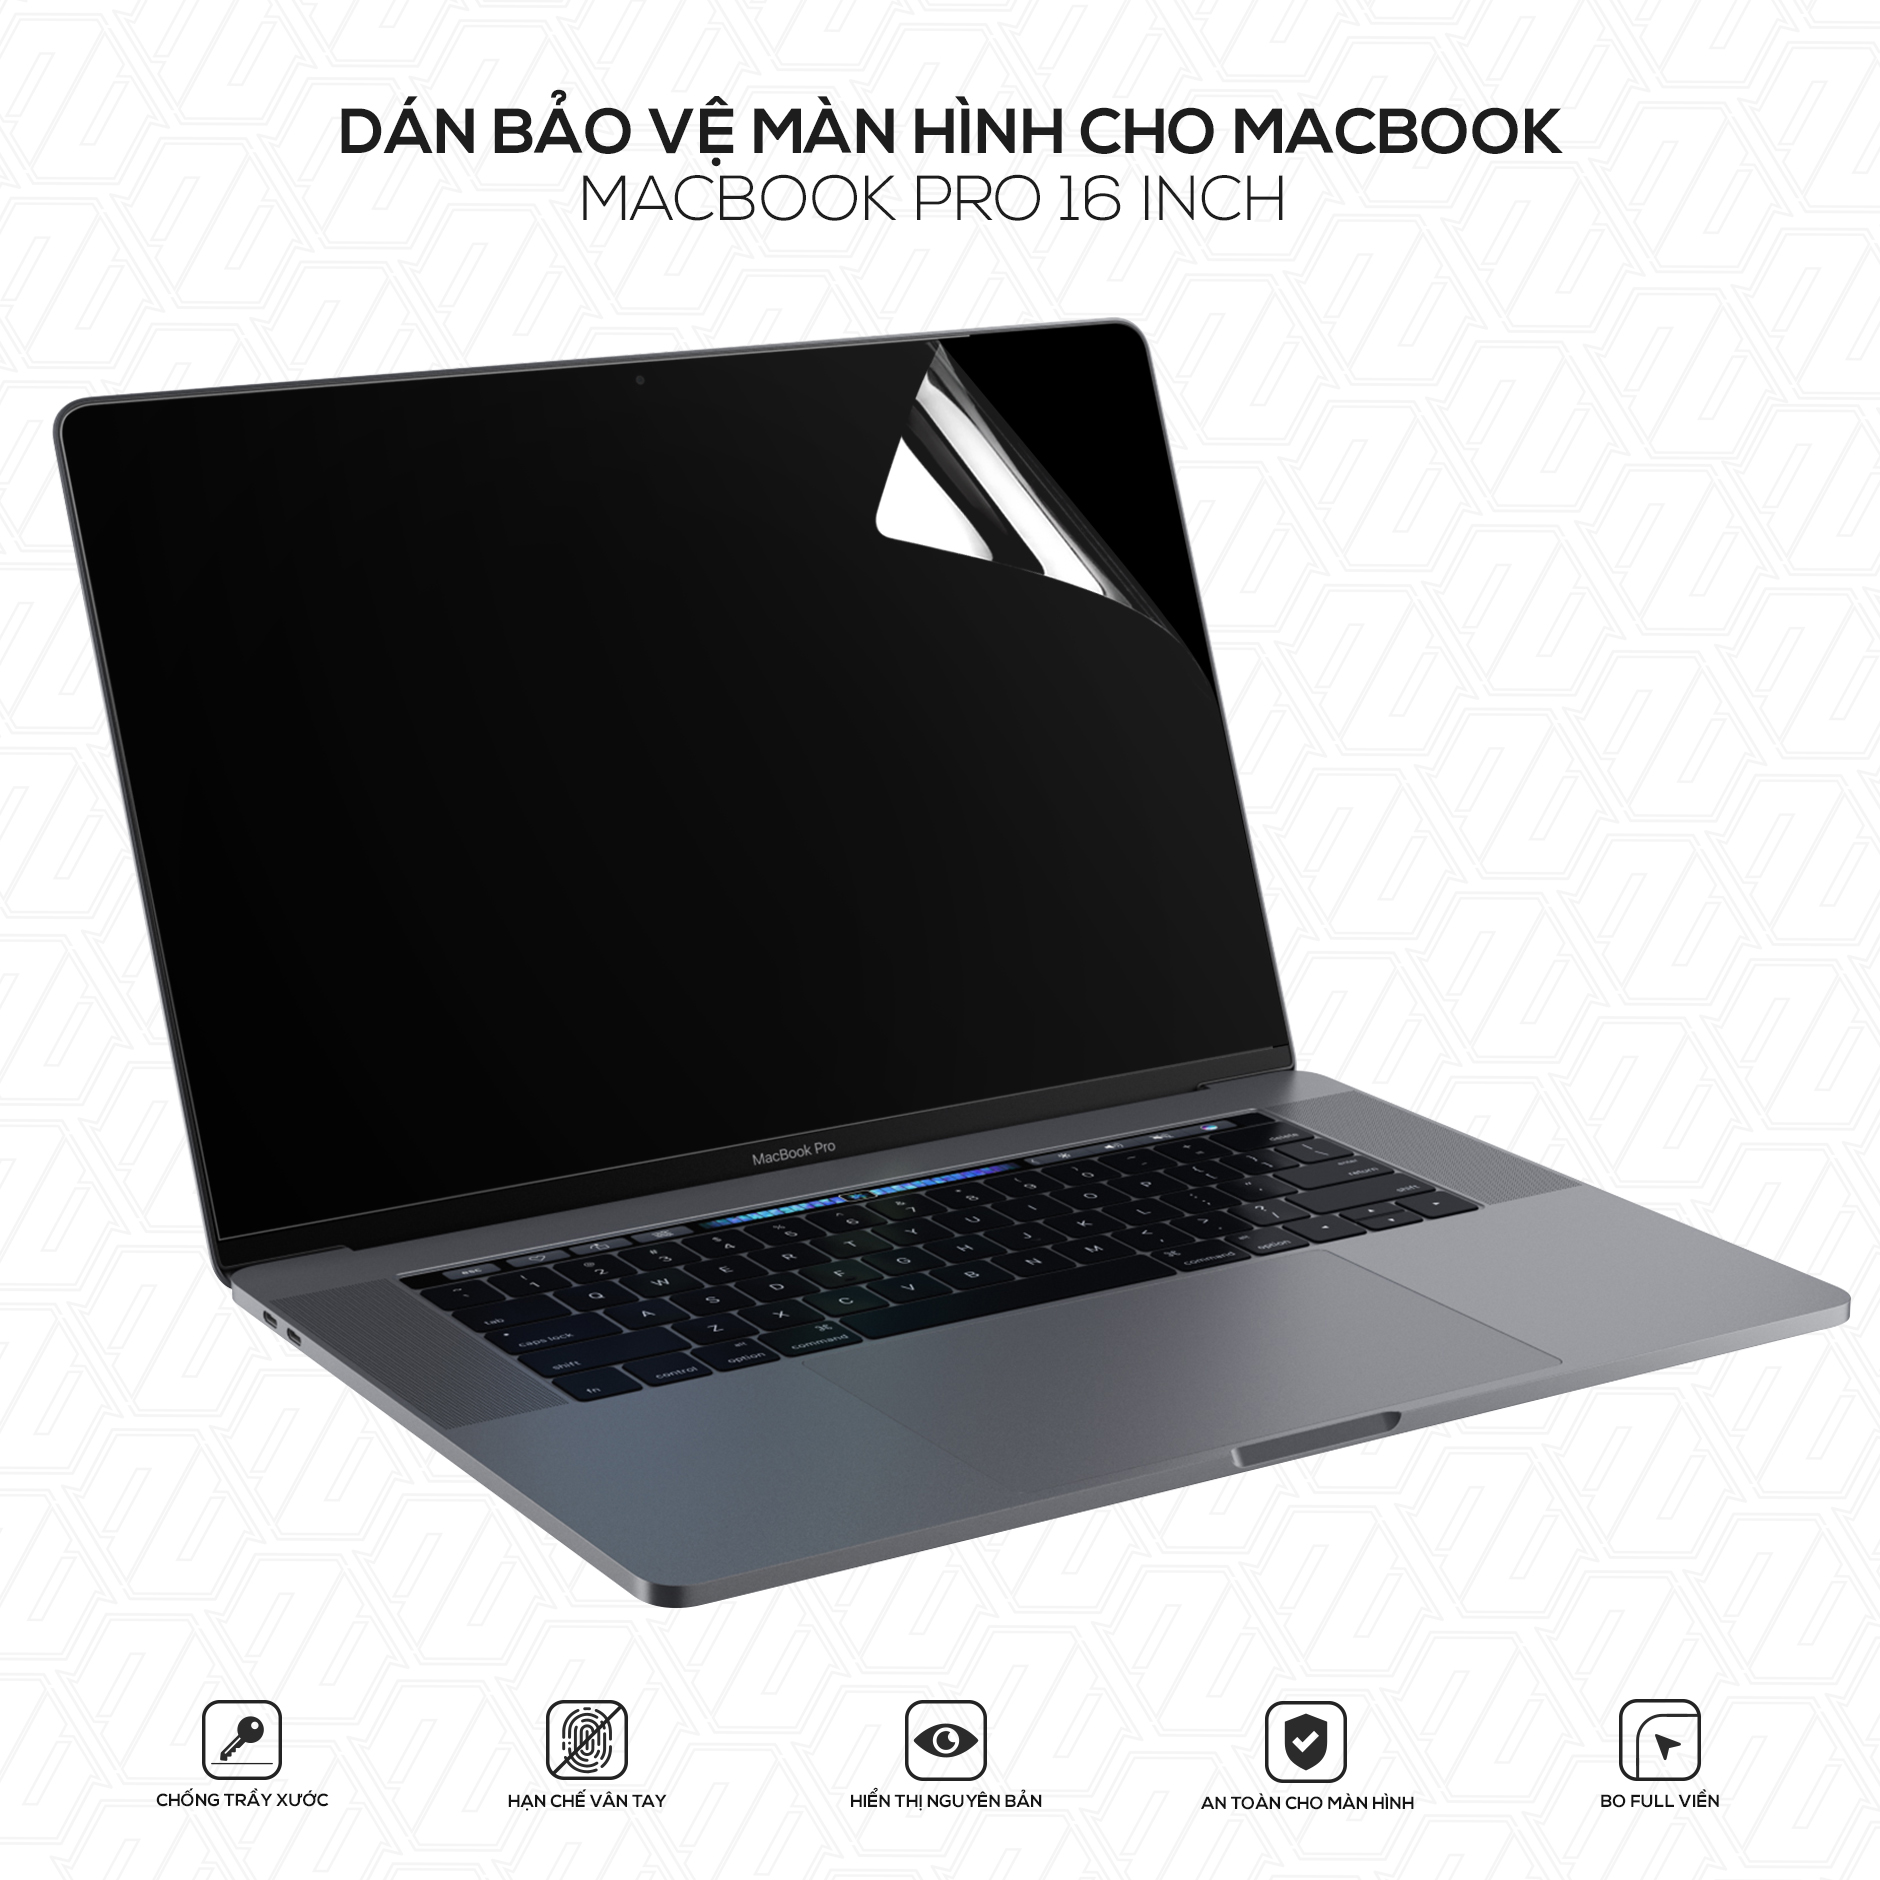 MacBook Pro 15inch